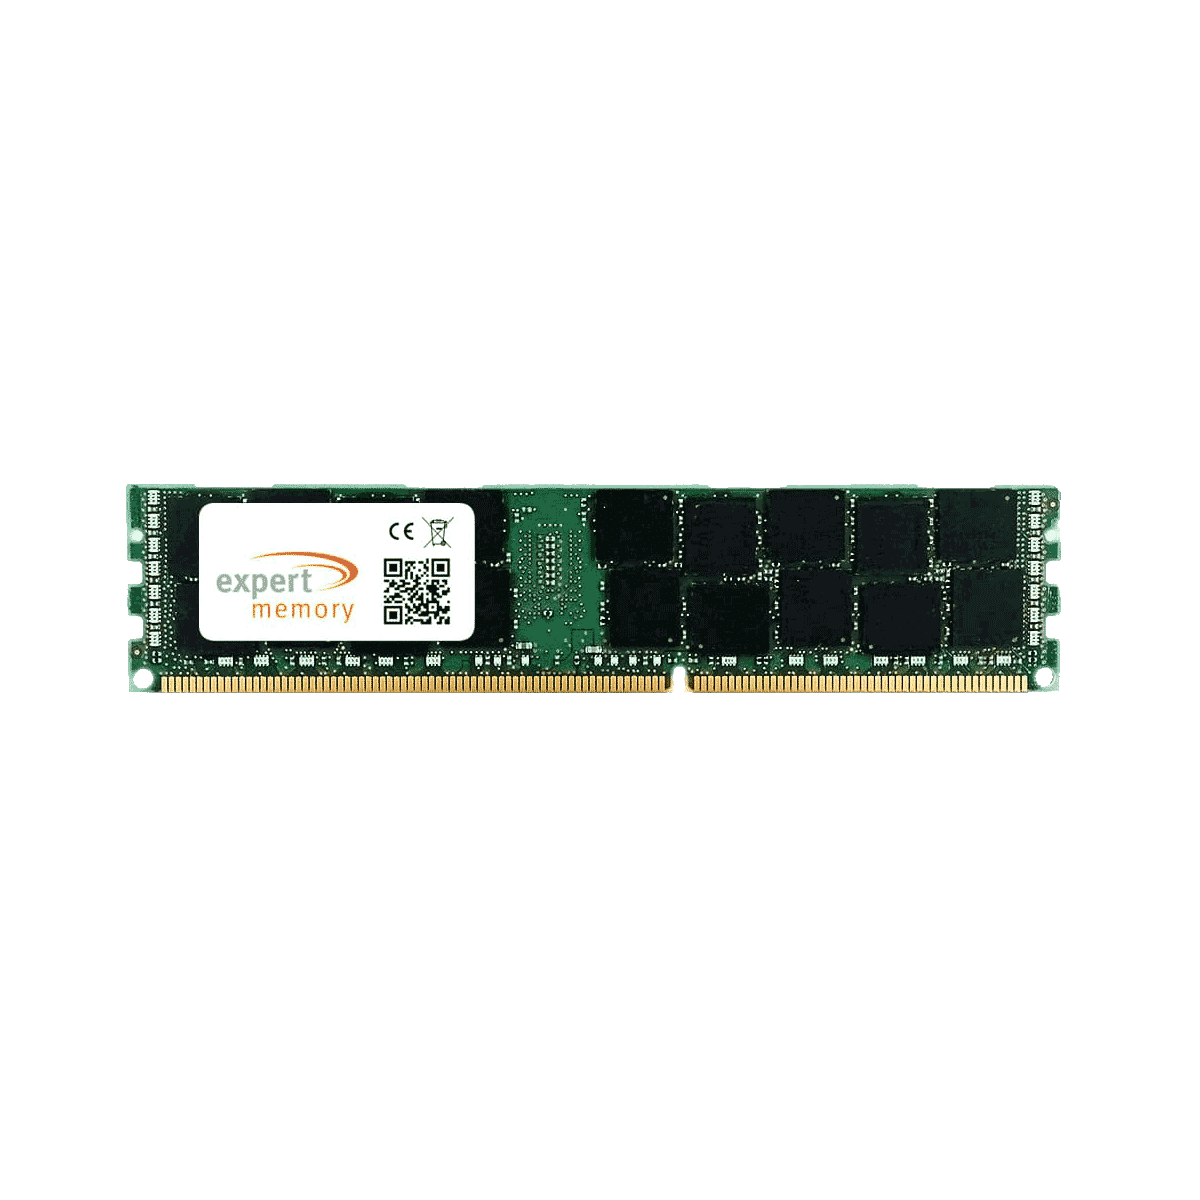 GB Altos EXPERT Acer Upgrade 8GB R360 1600 Memory Server 8 RAM 2Rx4 DDR3 MEMORY F2 RDIMM